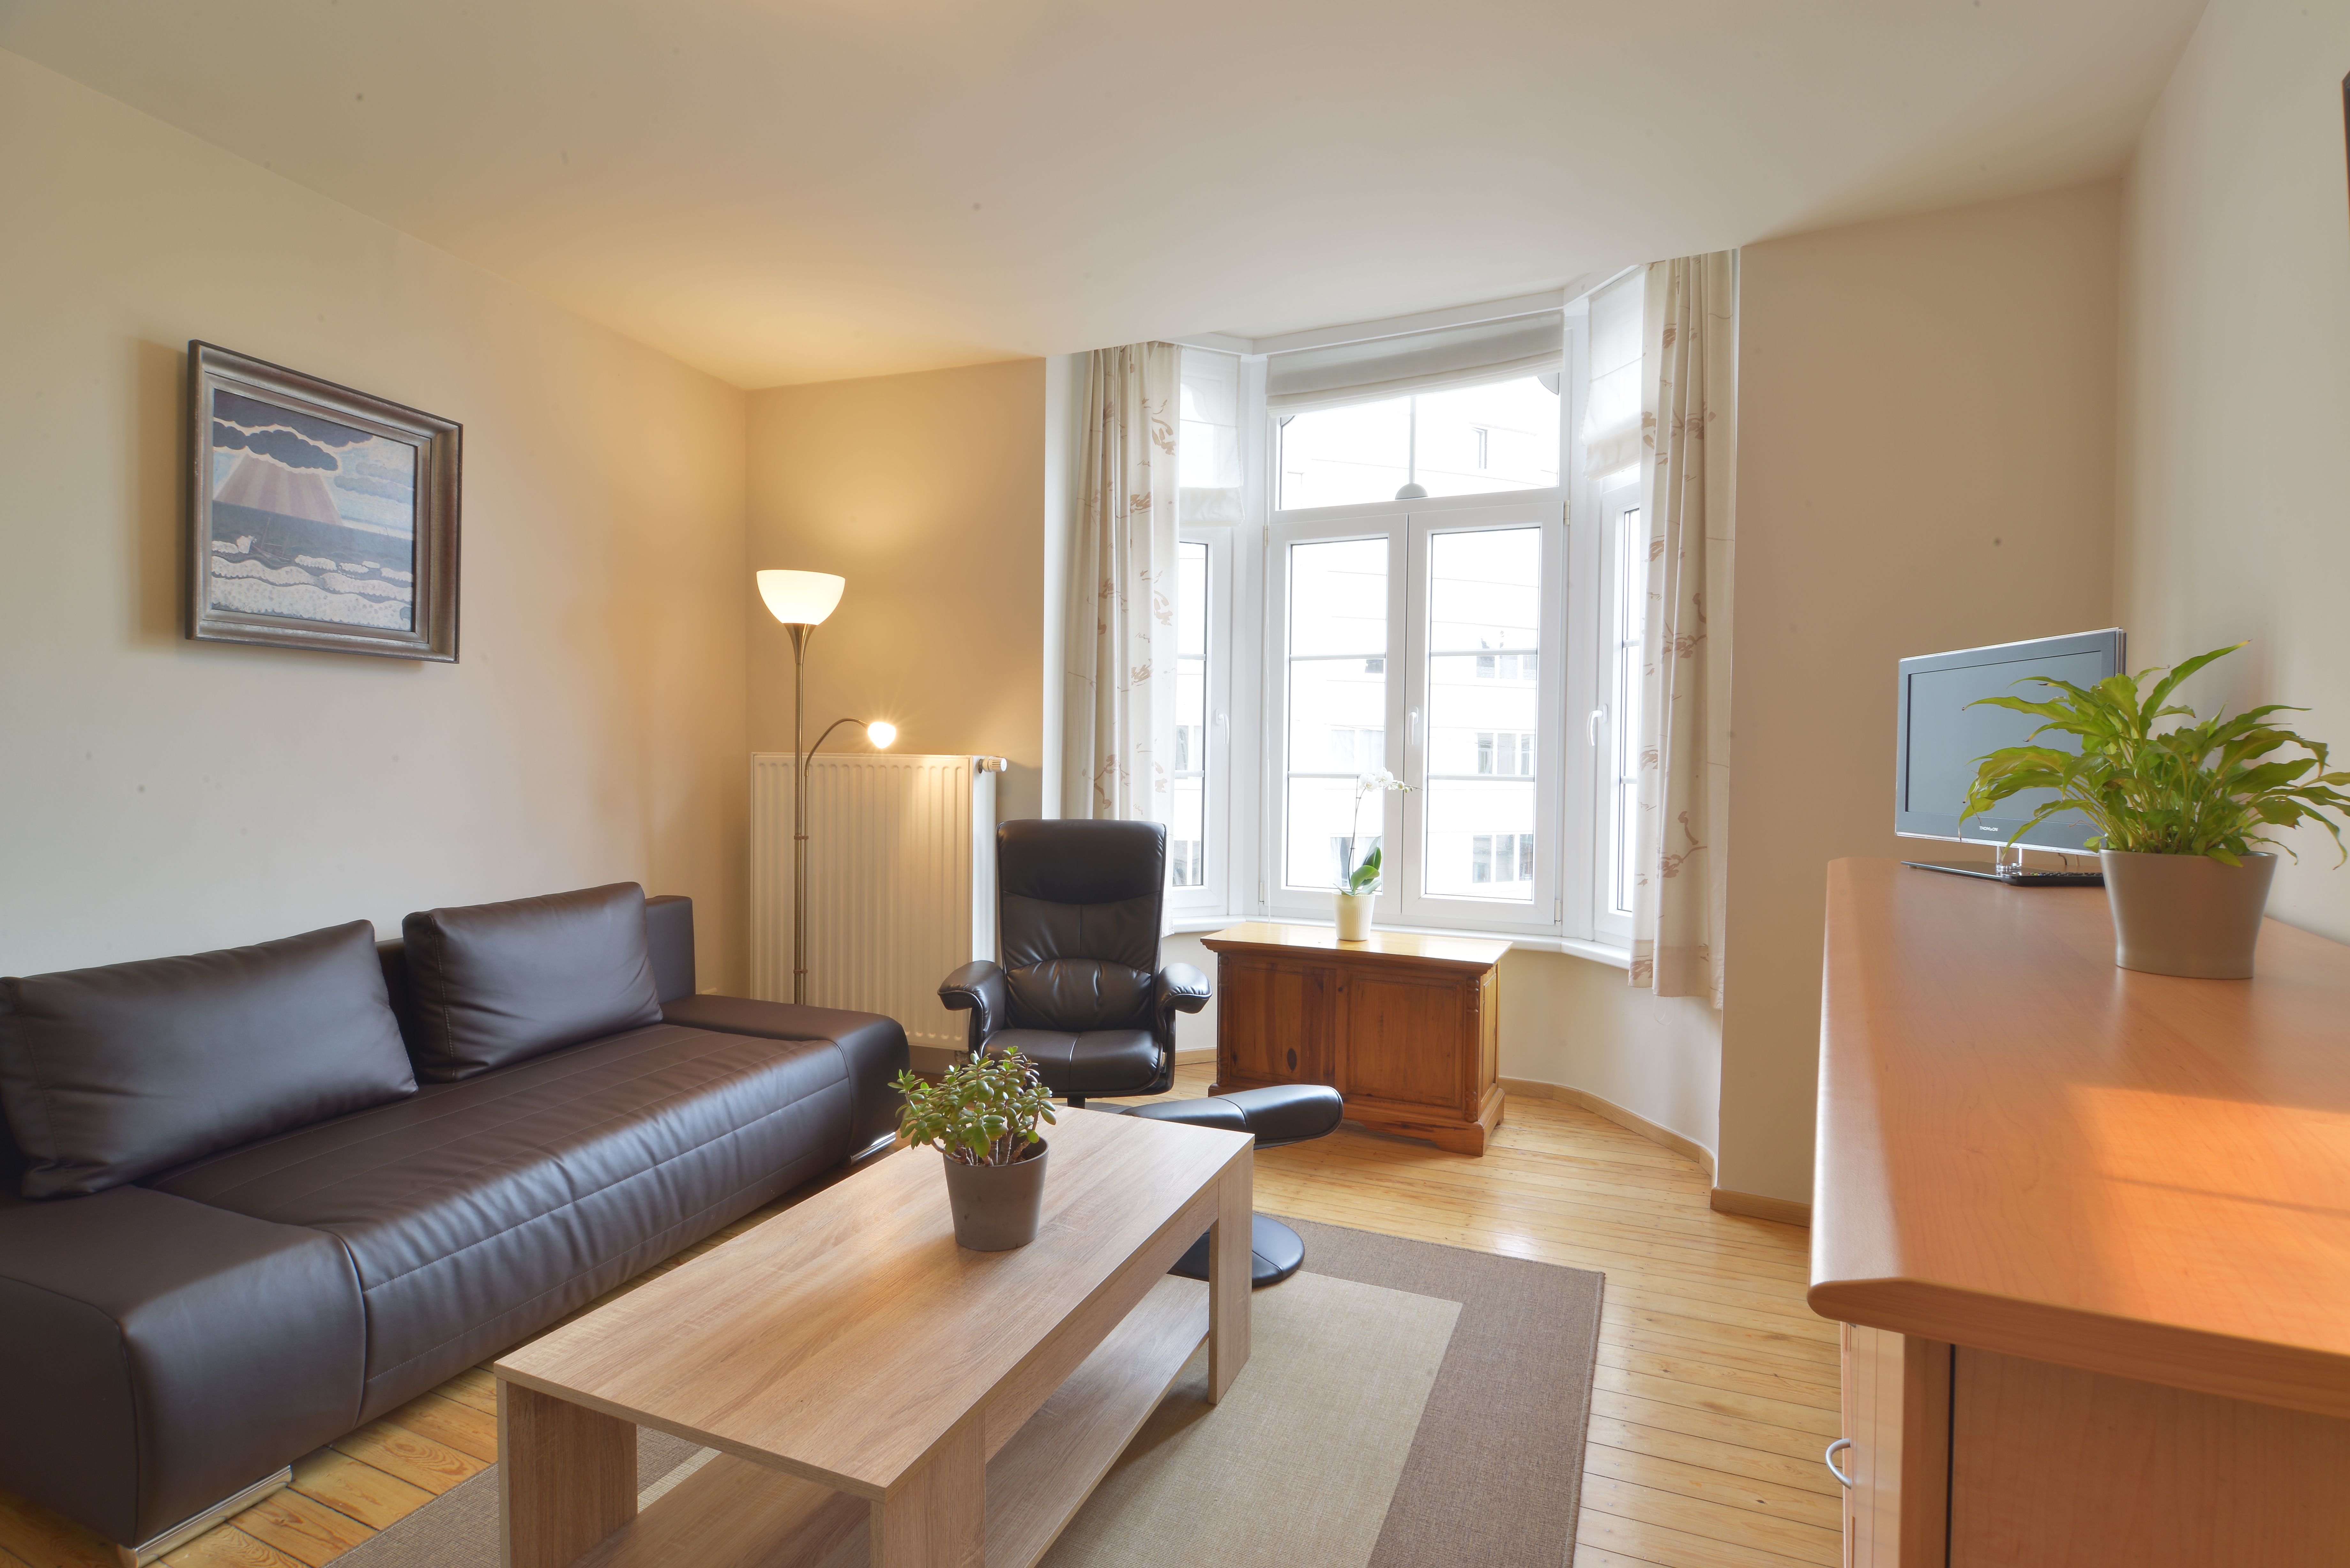  Möblierte Wohnung in Gent